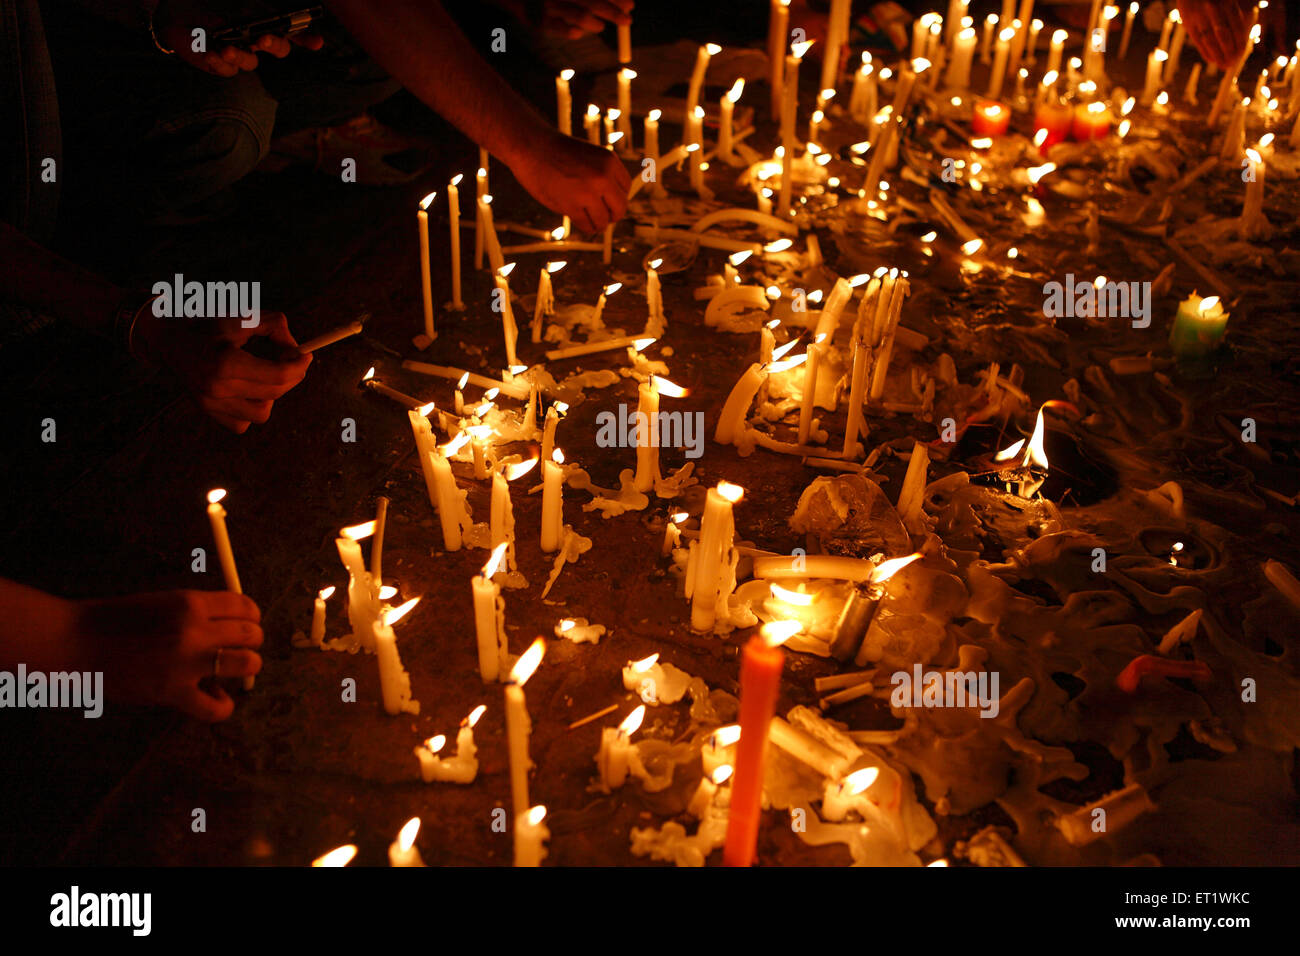 Les citoyens éclairant des bougies et rendant hommage après l'attaque terroriste par Deccan Mujahideen le 26 novembre 2008 Mumbai Inde Banque D'Images